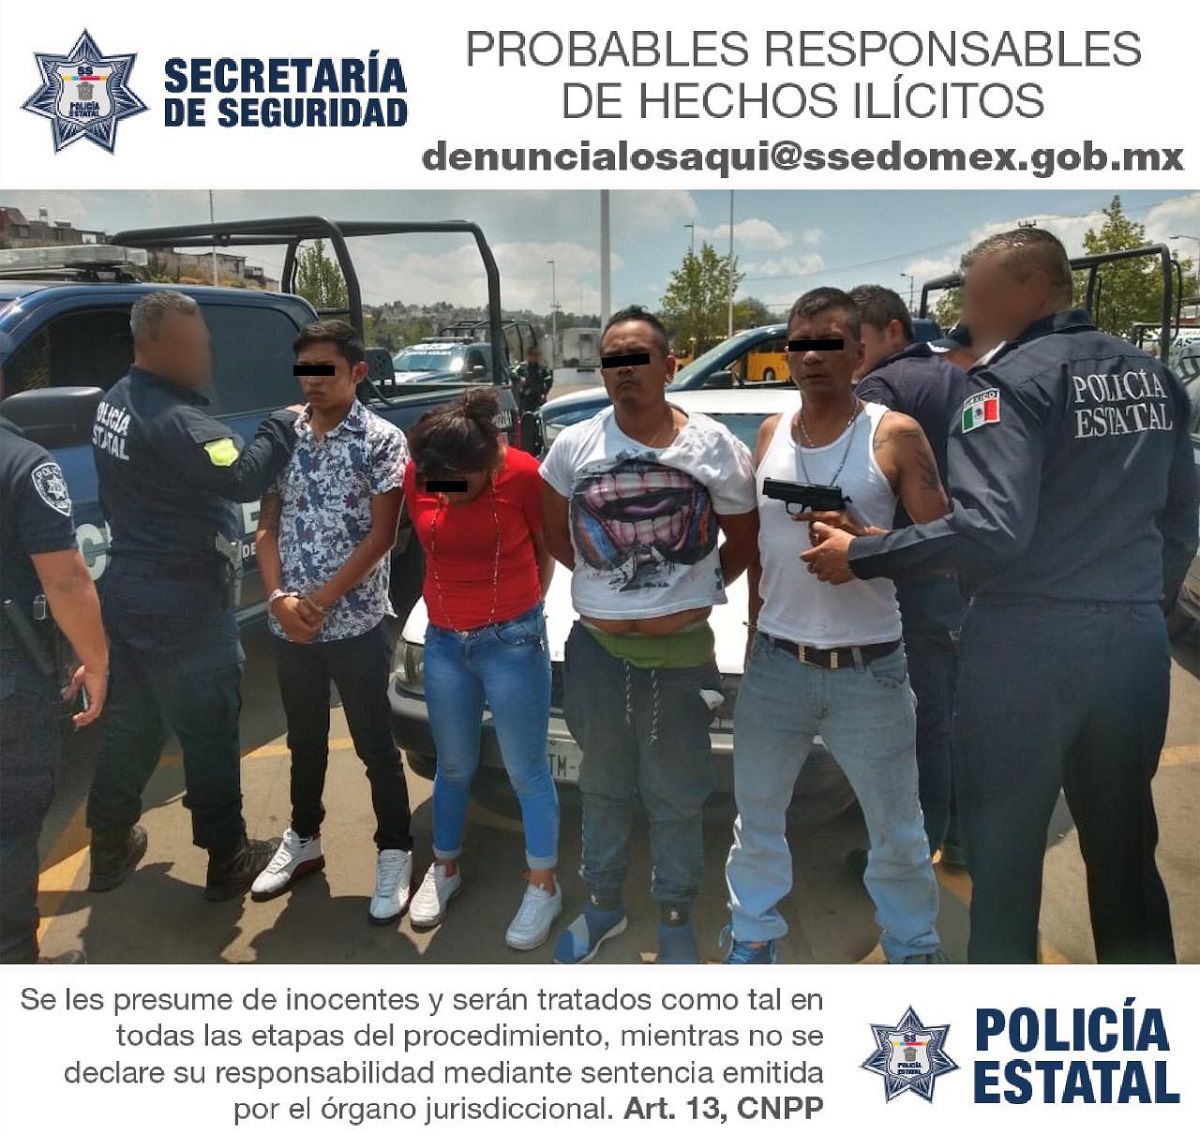 Tras persecución, policías aprehenden a probables asaltantes bancarios en Huixquilucan